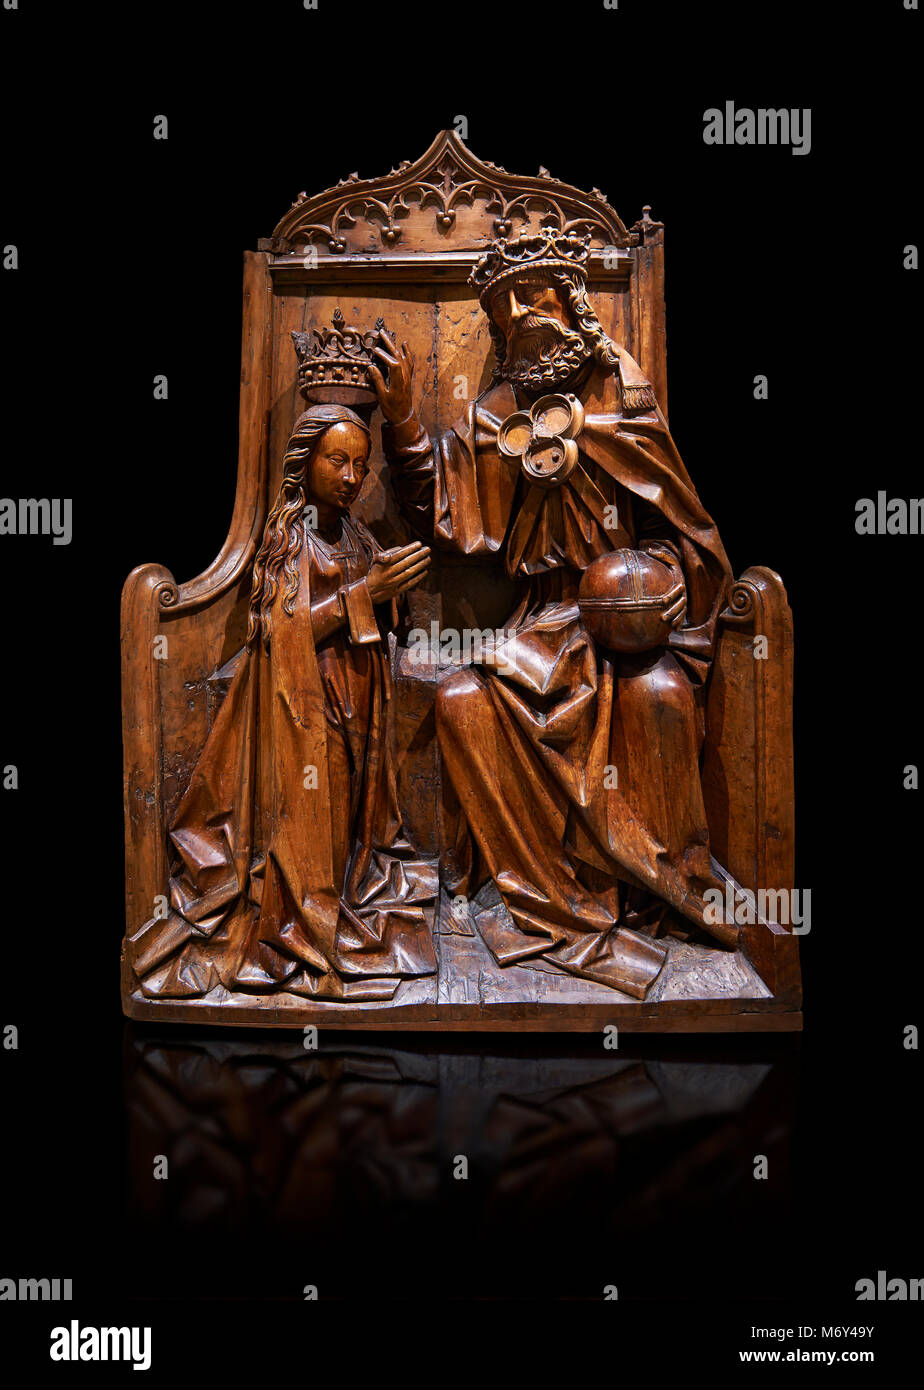 Relief en bois gothique de l'crwoning de de la Vierge Marie dans l'sgchiool l'Europe centrale, de style fin de 15e siècle. Musée national de Ca Banque D'Images